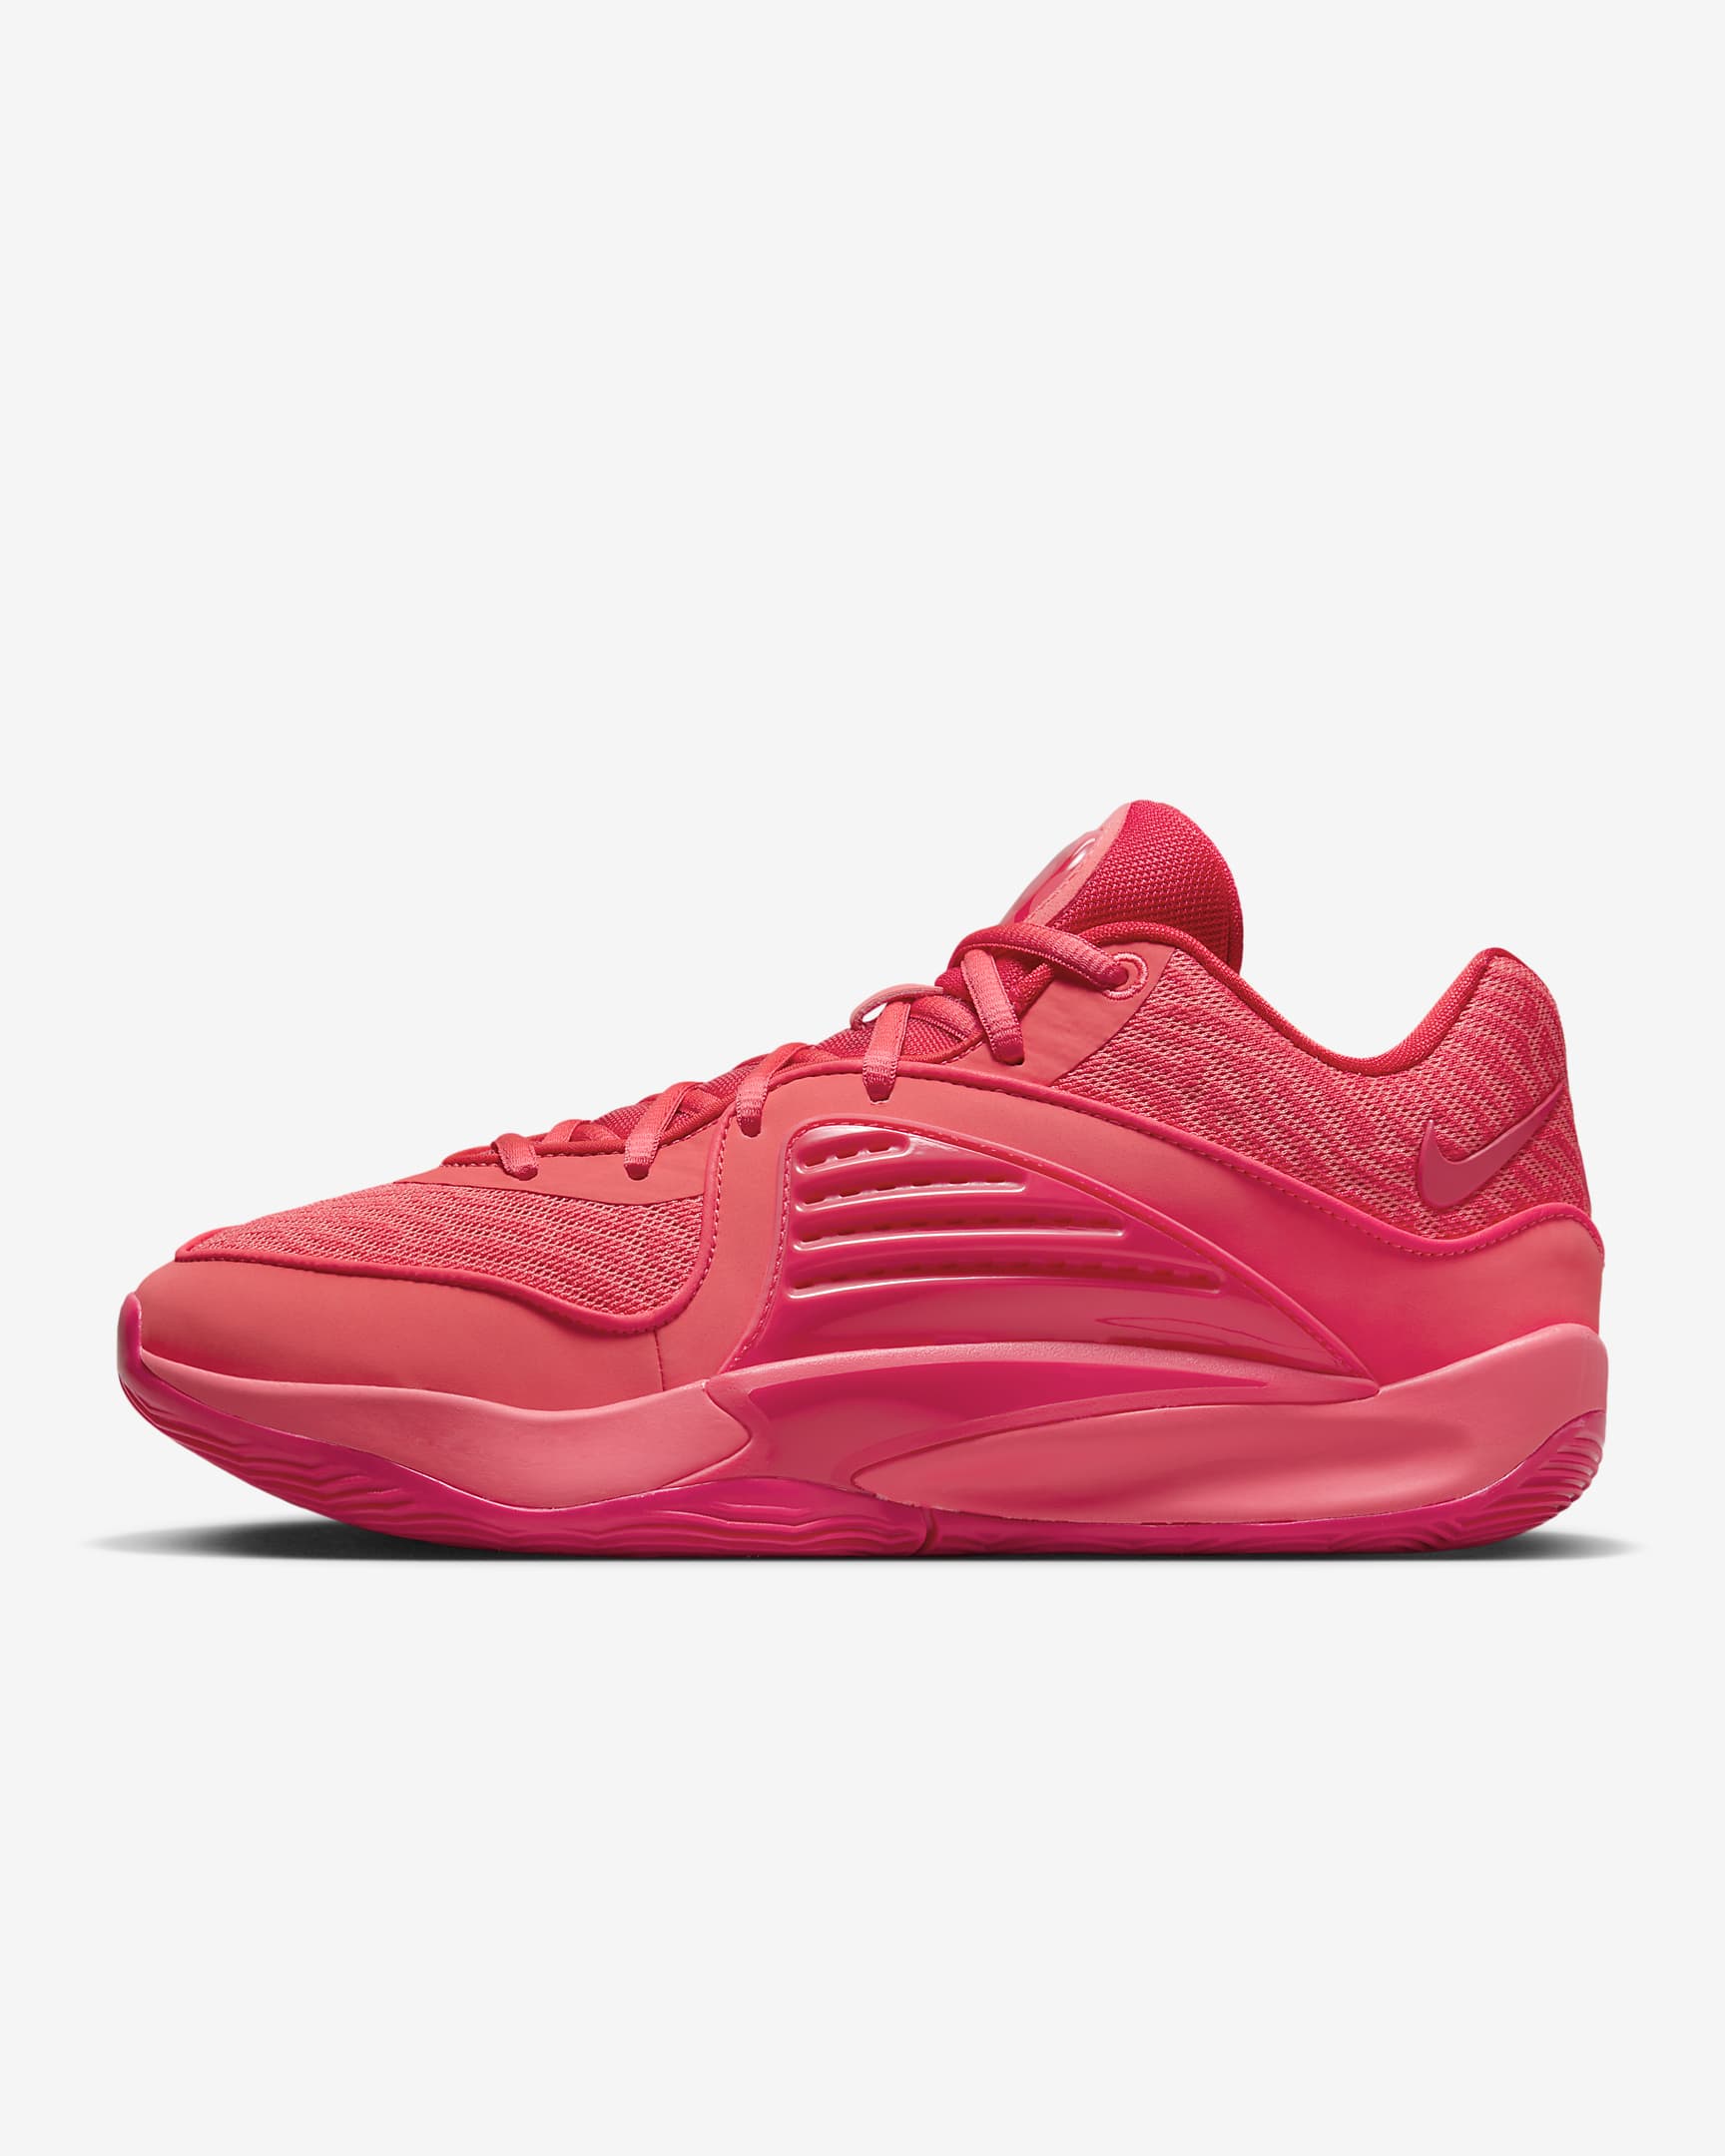 KD16 Basketball Shoes. Nike FI